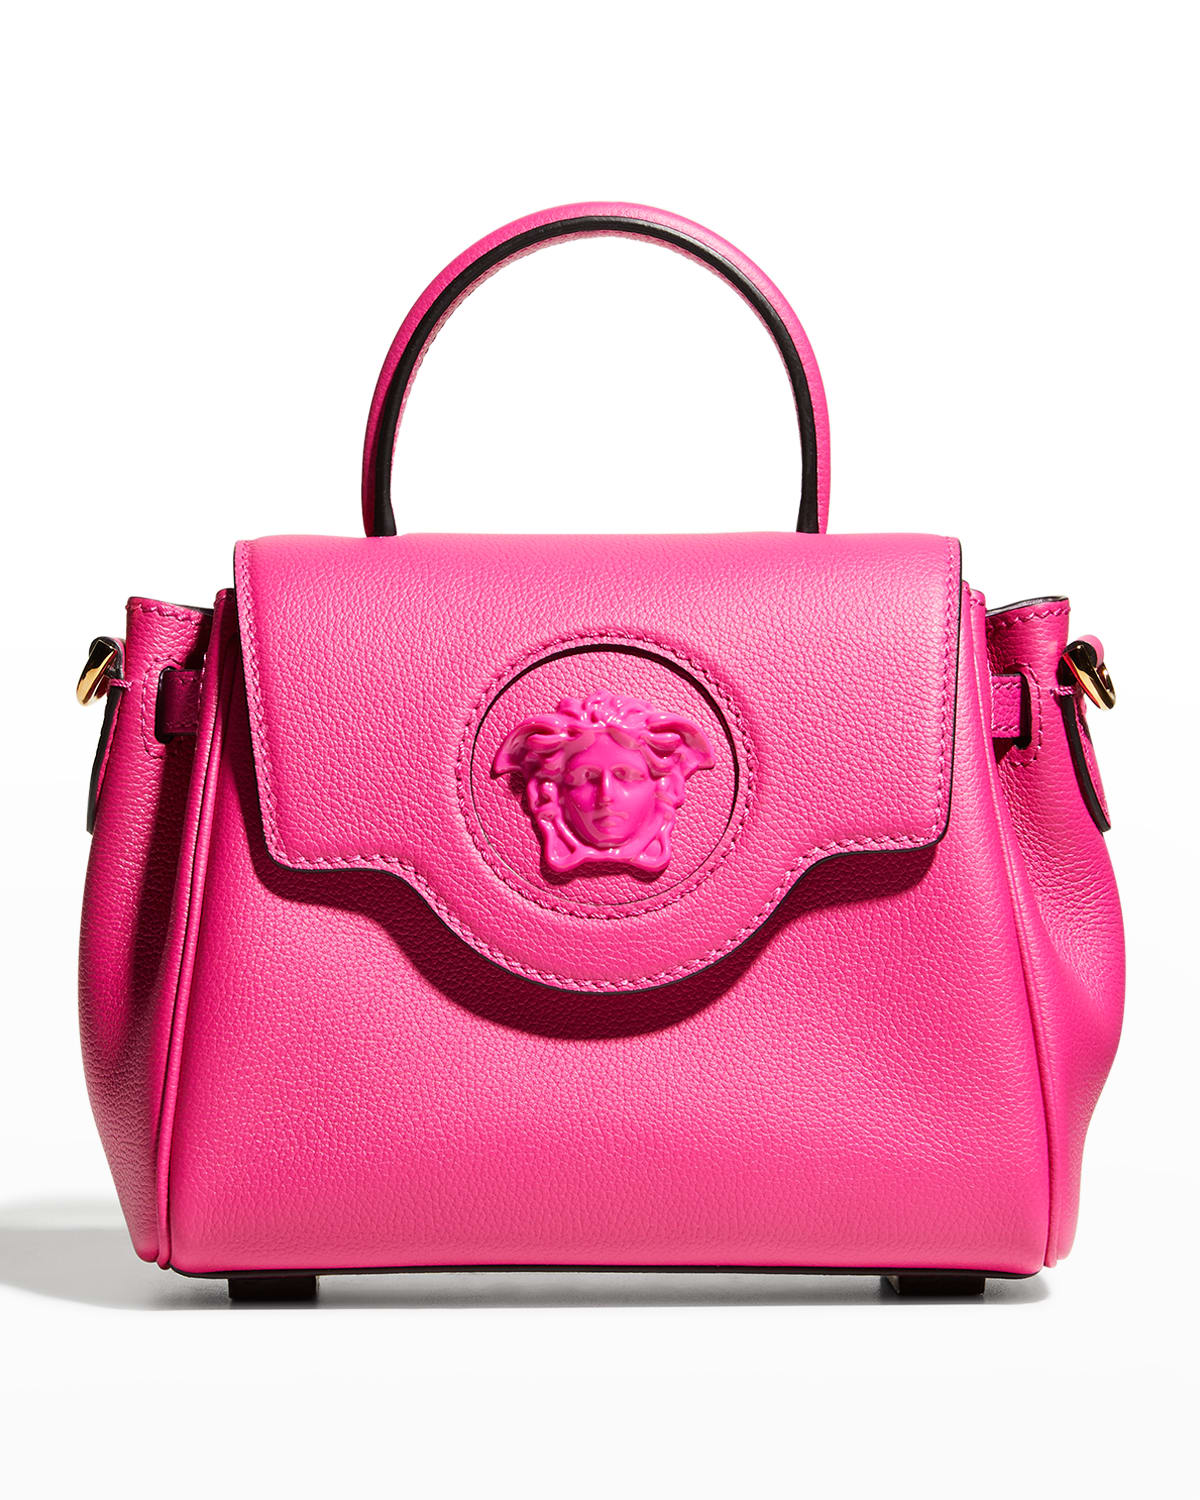 Versace La Medusa Small Handbag In Hot Pink